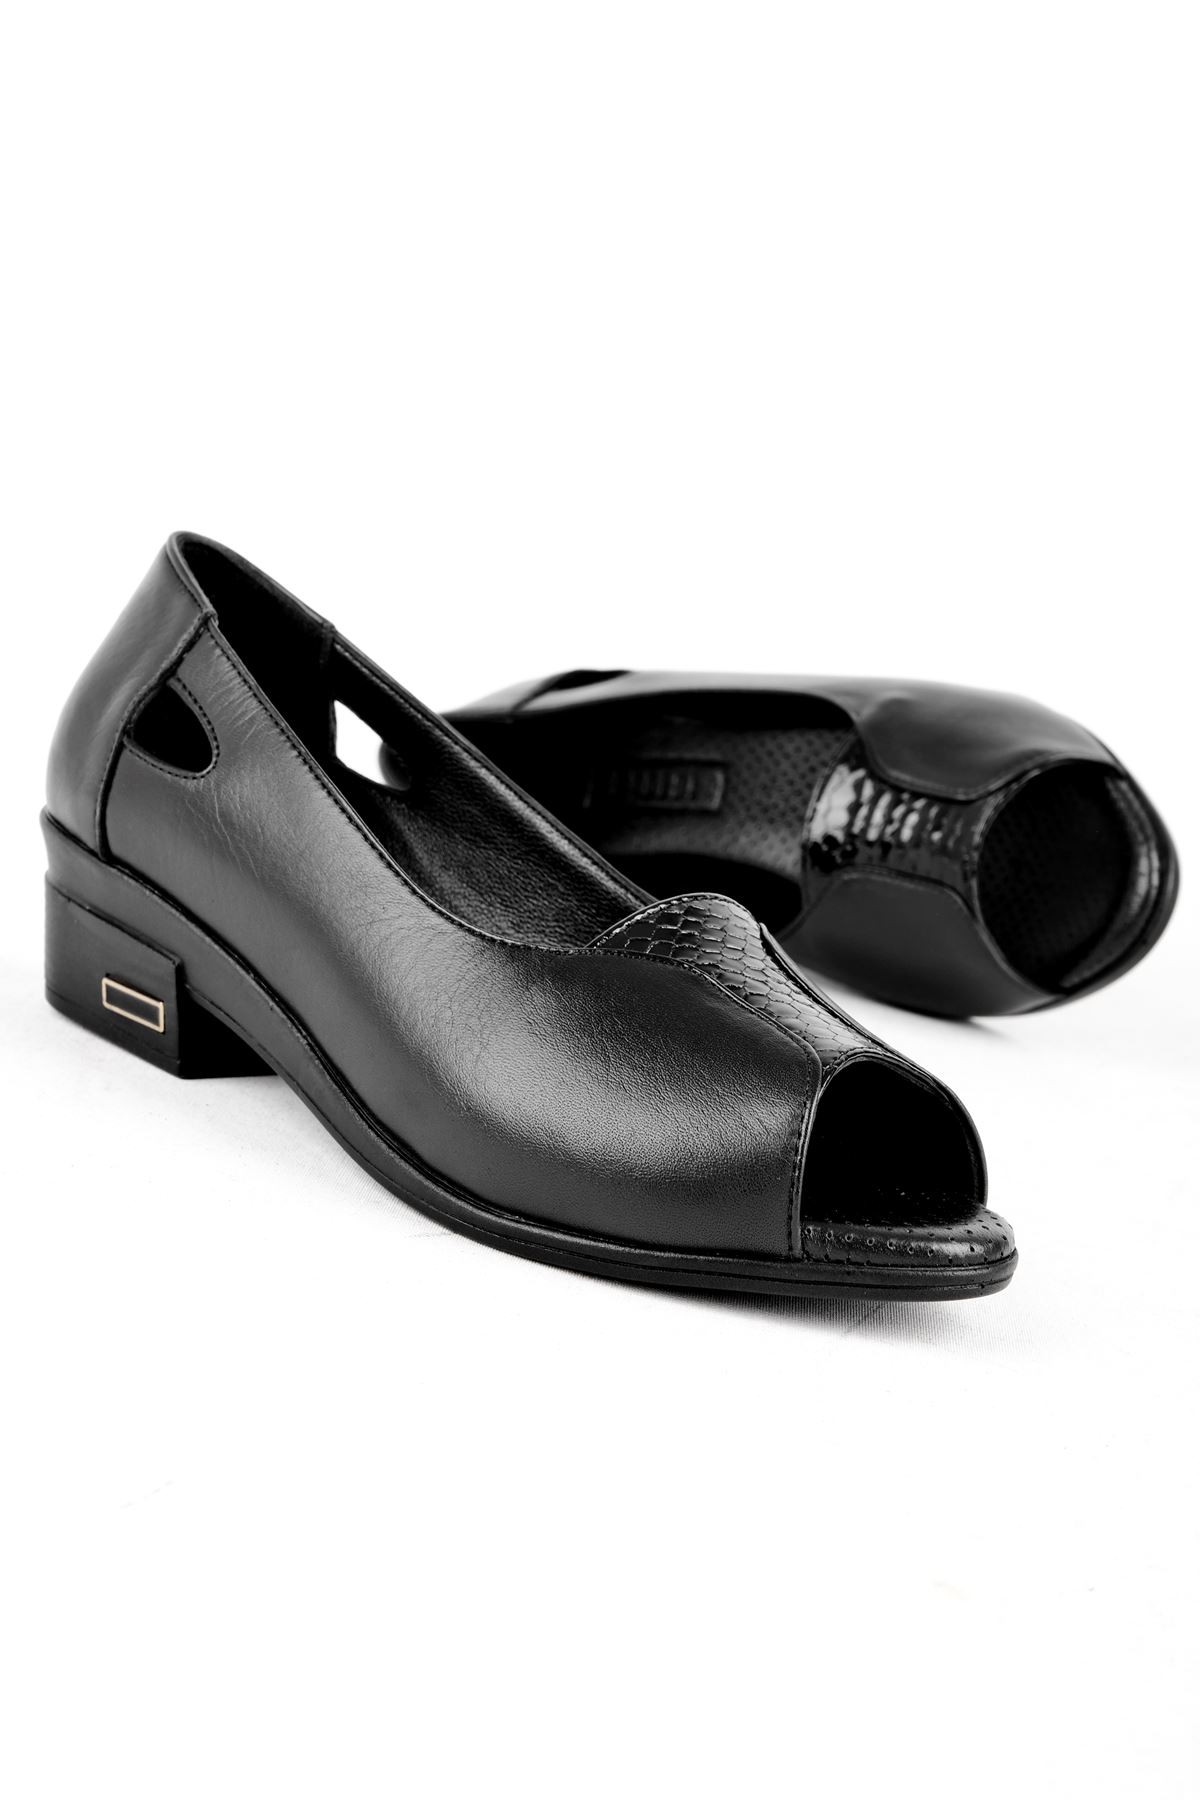 Rolvy Kadın Hakiki Deri Günlük Ayakkabı B3180 - Siyah